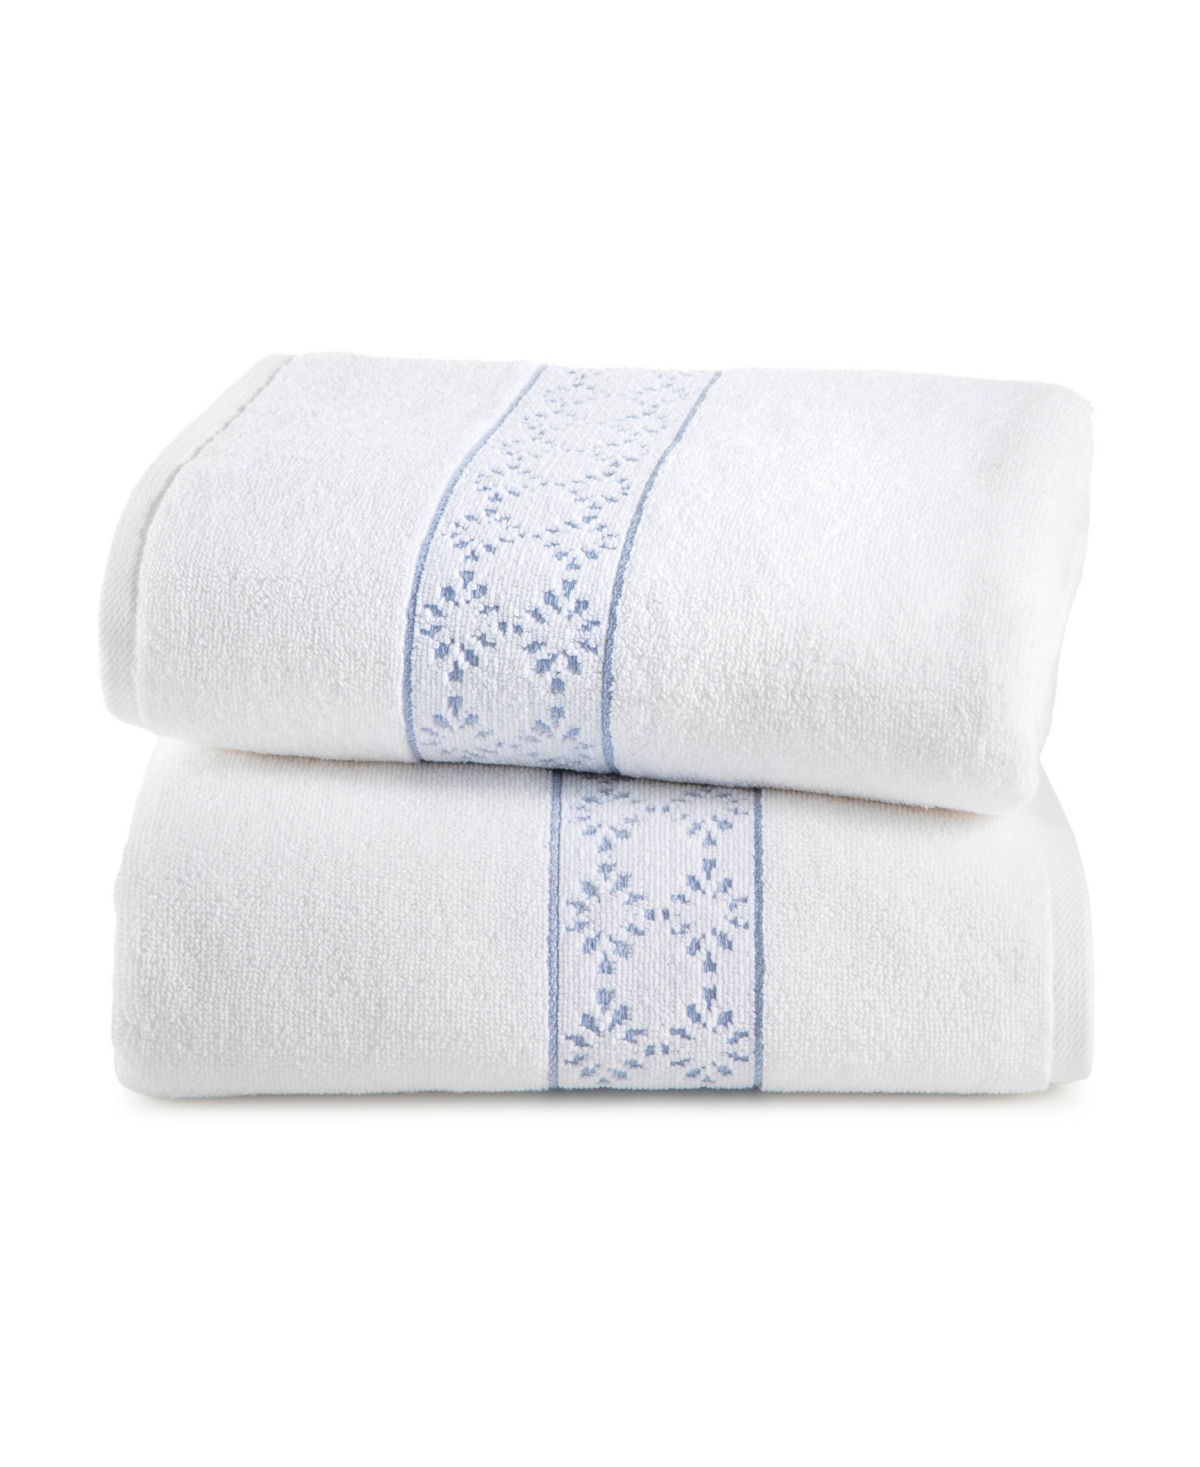 Clean Design Home X Martex Allergen-resistant Savoy 2 Pack Bath Towel Set In White